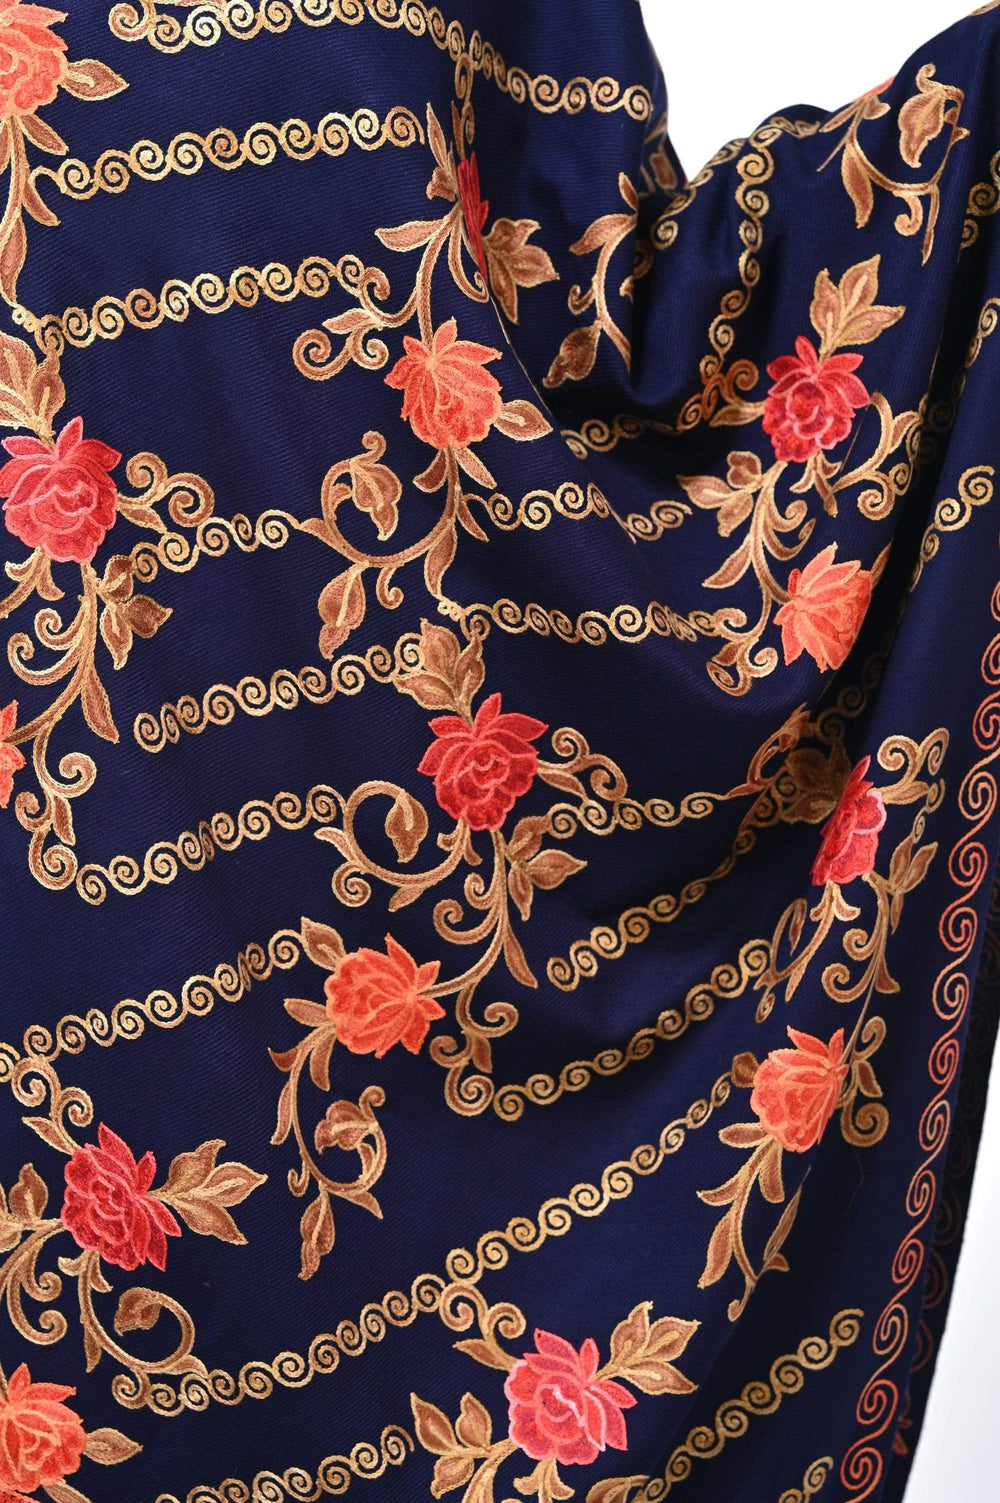 Pashwool 70x200 Pashwool Womens Kashmiri Embroidery Stole, Woollen Stole, Warm and Soft, Navy Blue